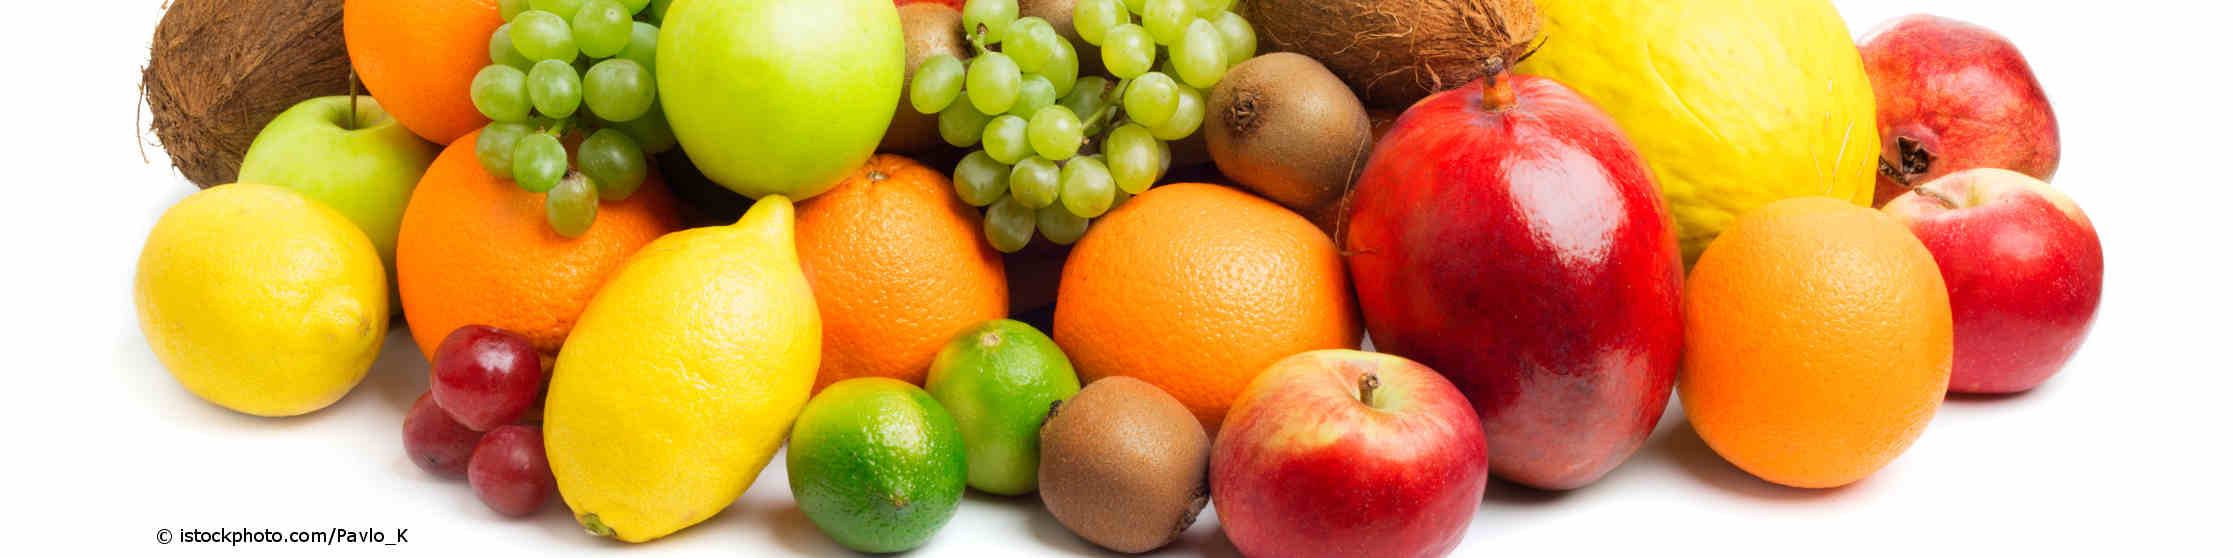 Äpfel, Kiwi, Orangen, Bananen, Zitronen und Trauben können bei Pollenallergikern zu Kreuzallergien führen